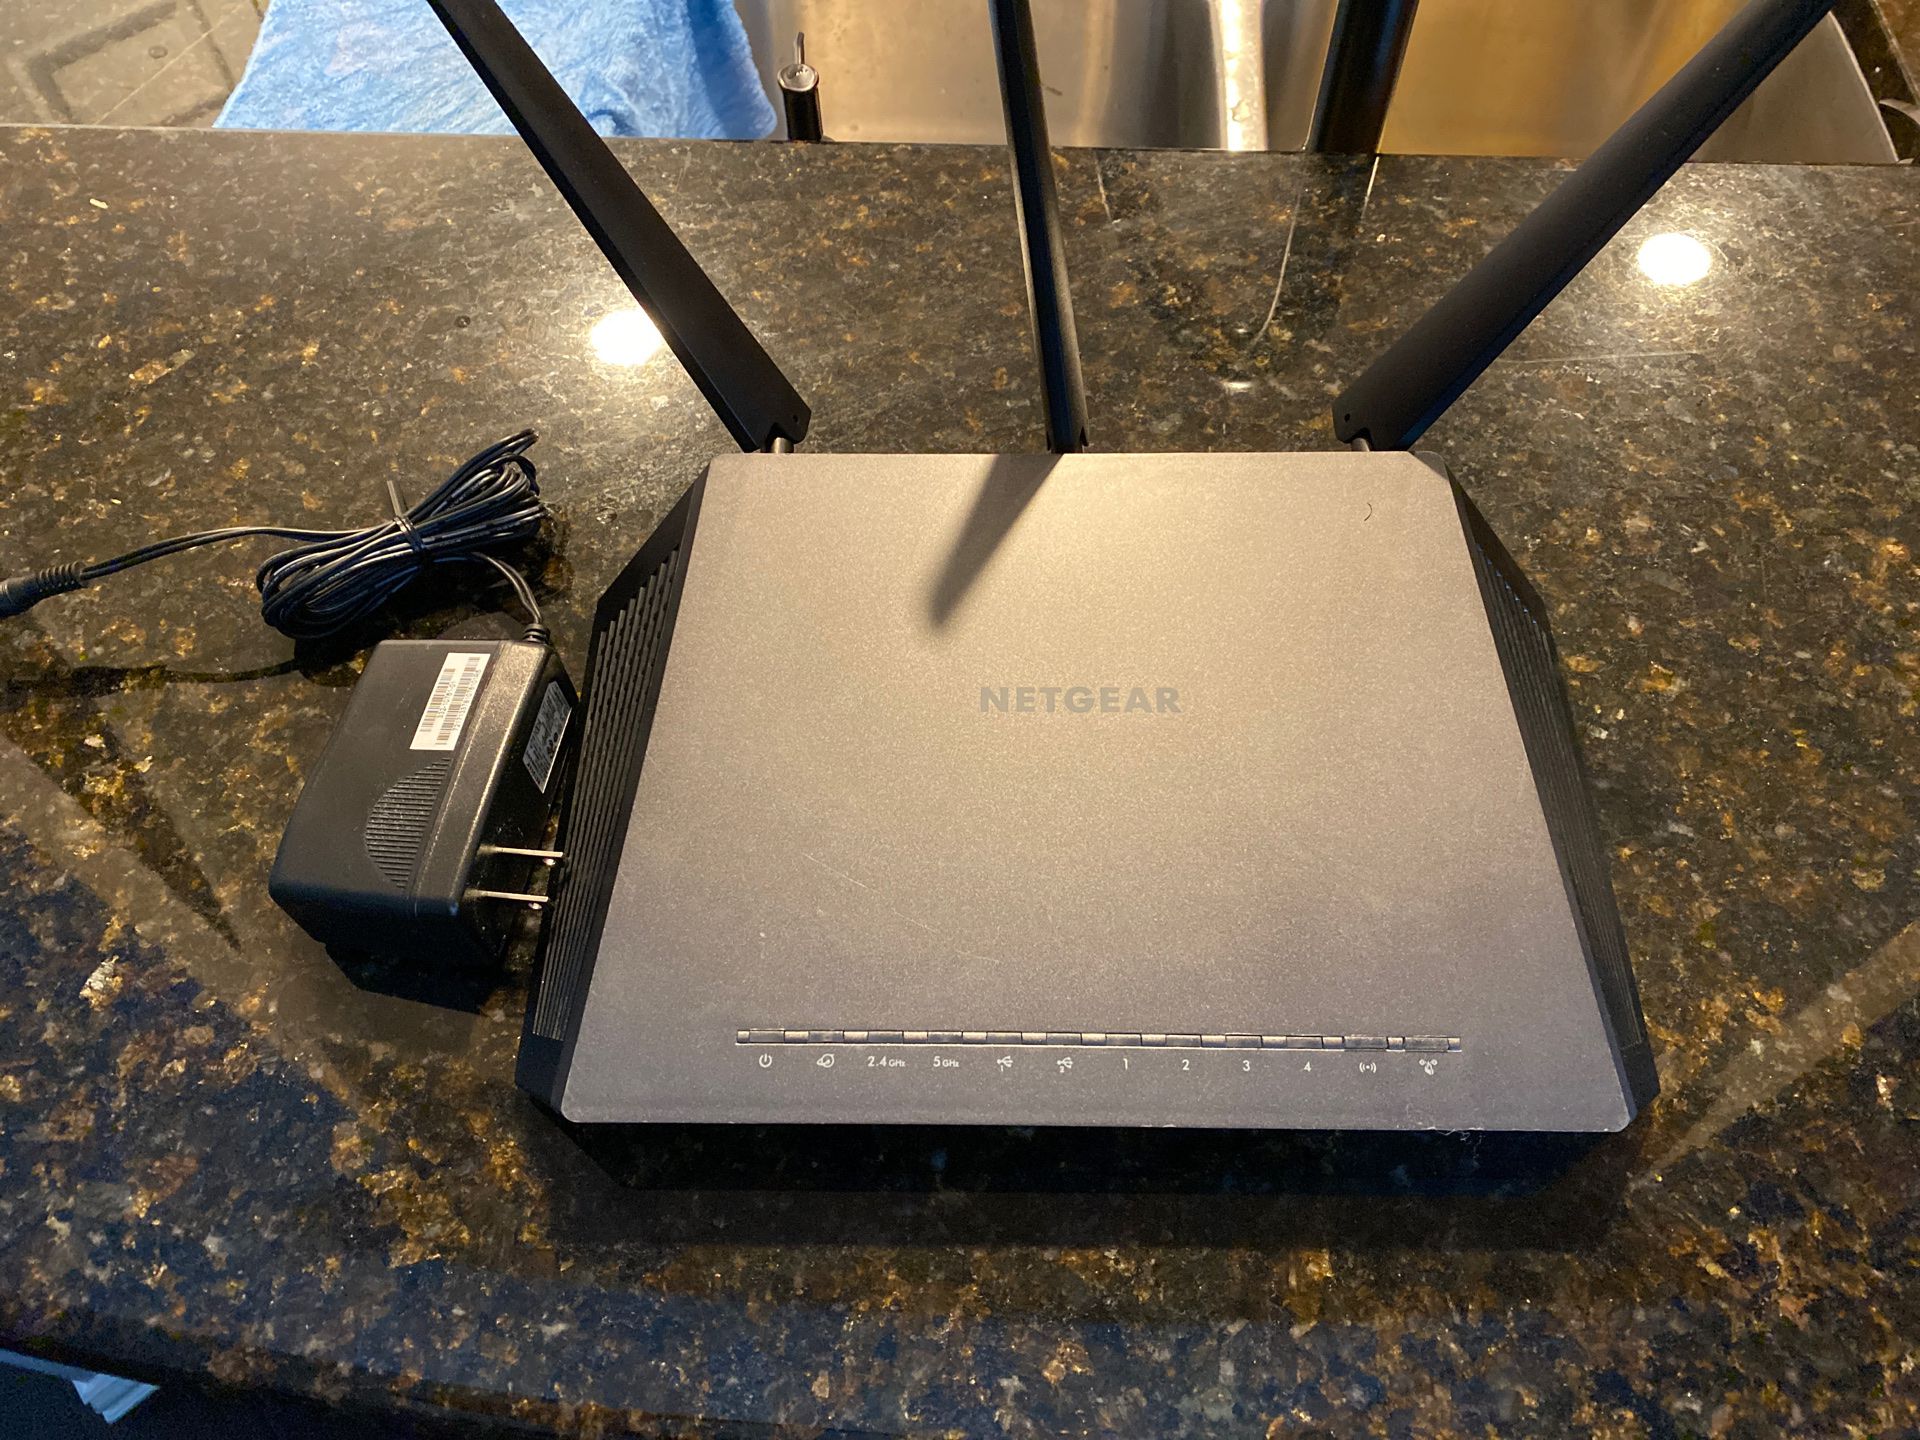 Netgear R7000 Nighthawk WiFi router